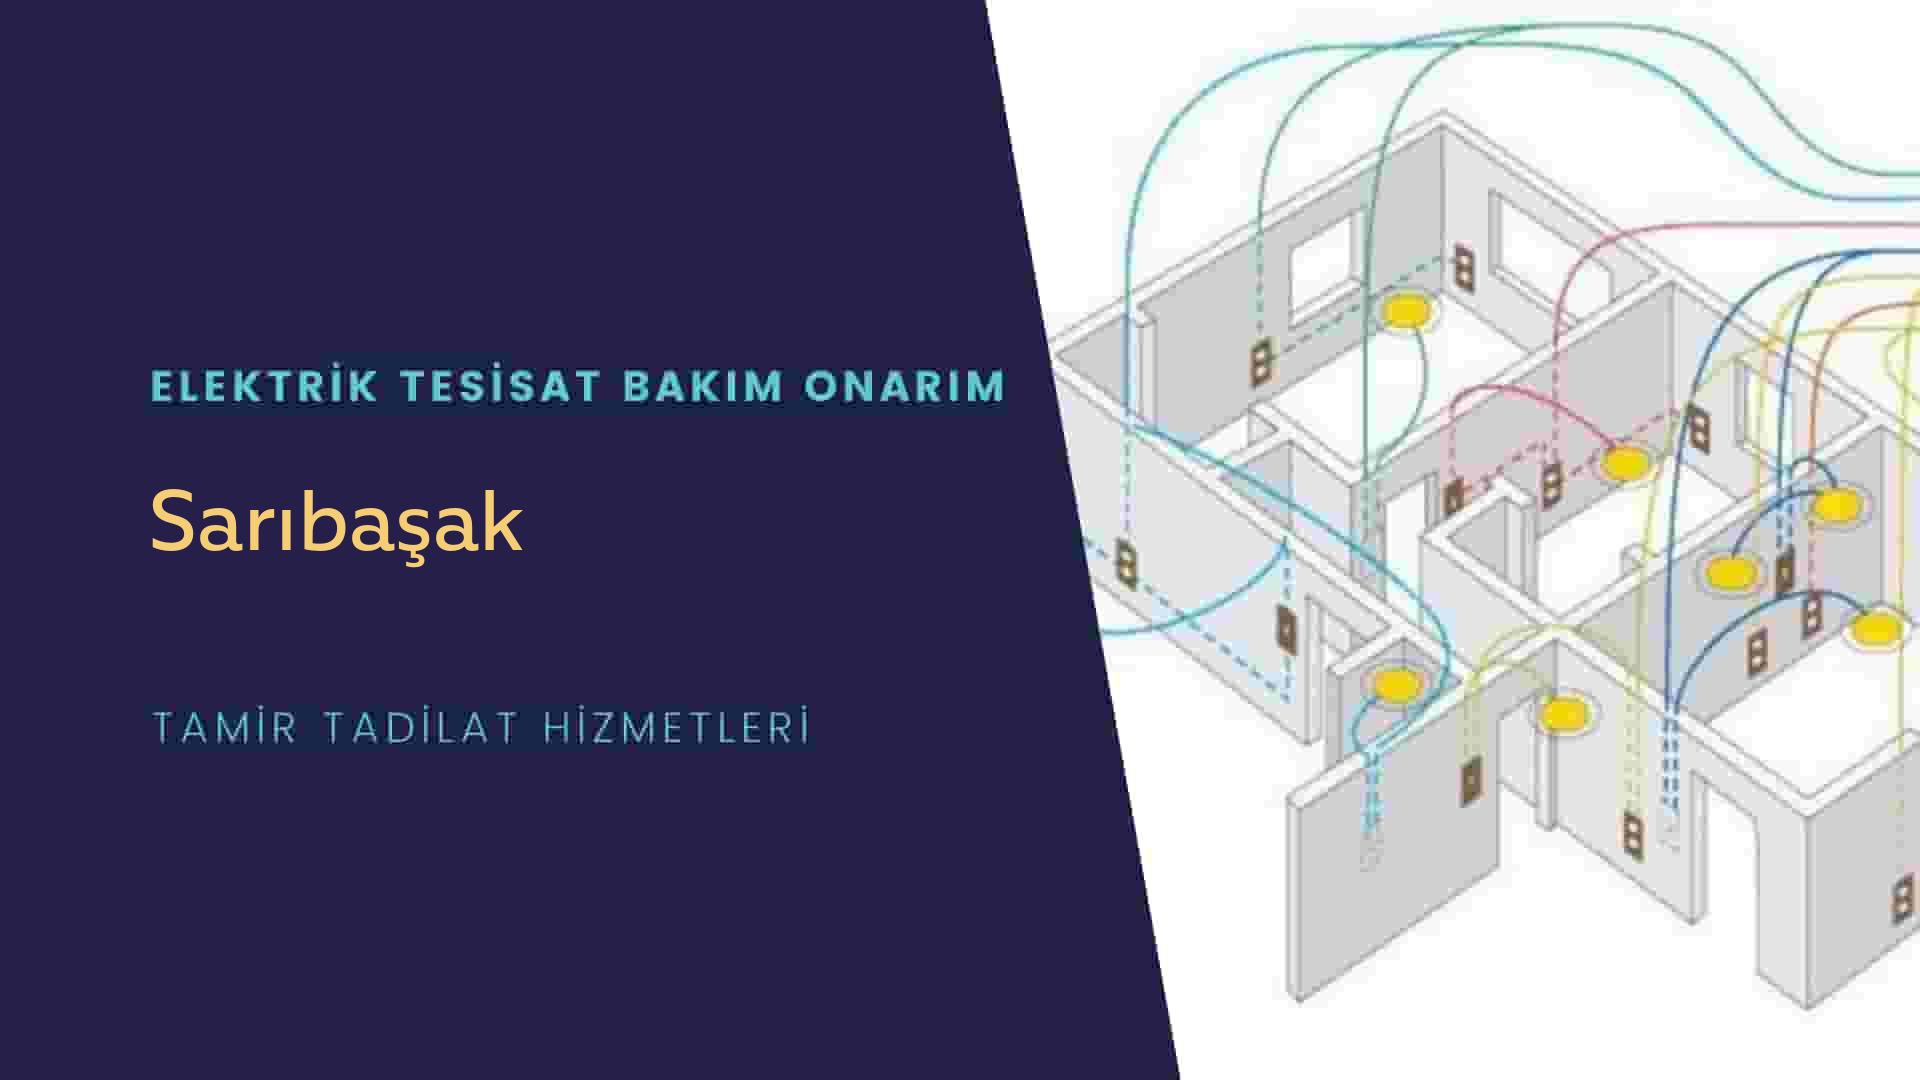 Sarıbaşak'ta elektrik tesisatı ustalarımı arıyorsunuz doğru adrestenizi Sarıbaşak elektrik tesisatı ustalarımız 7/24 sizlere hizmet vermekten mutluluk duyar.